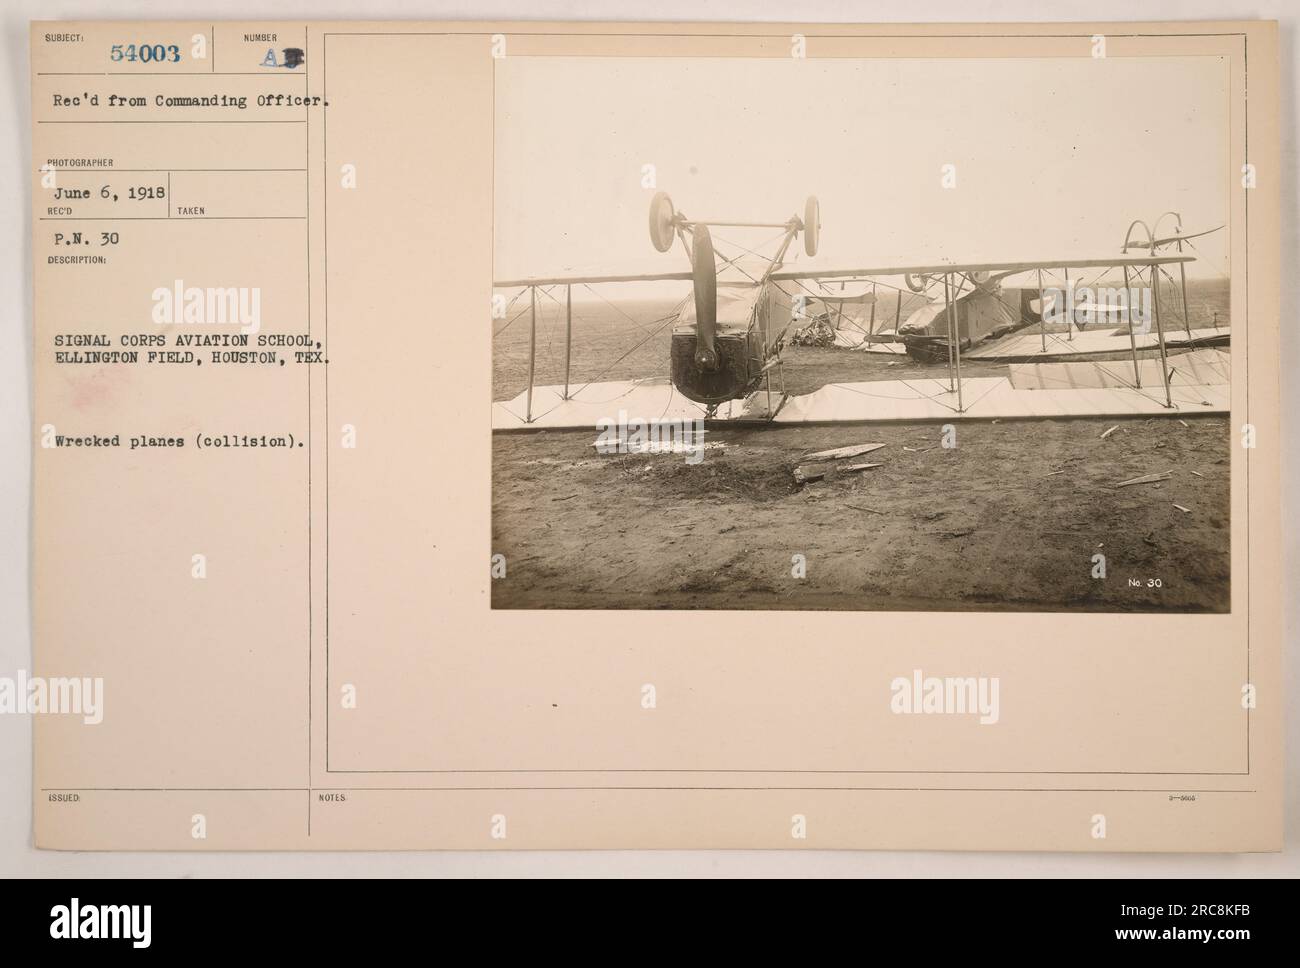 Naufrage d'avions à signal corps Aviation School, Ellington Field, Houston, Texas, résultant d'une collision. La photographie a été prise le 6 juin 1918 et reçue du commandant sous le numéro de référence 54003. Il capture les conséquences de l'incident à l'école d'aviation. Banque D'Images